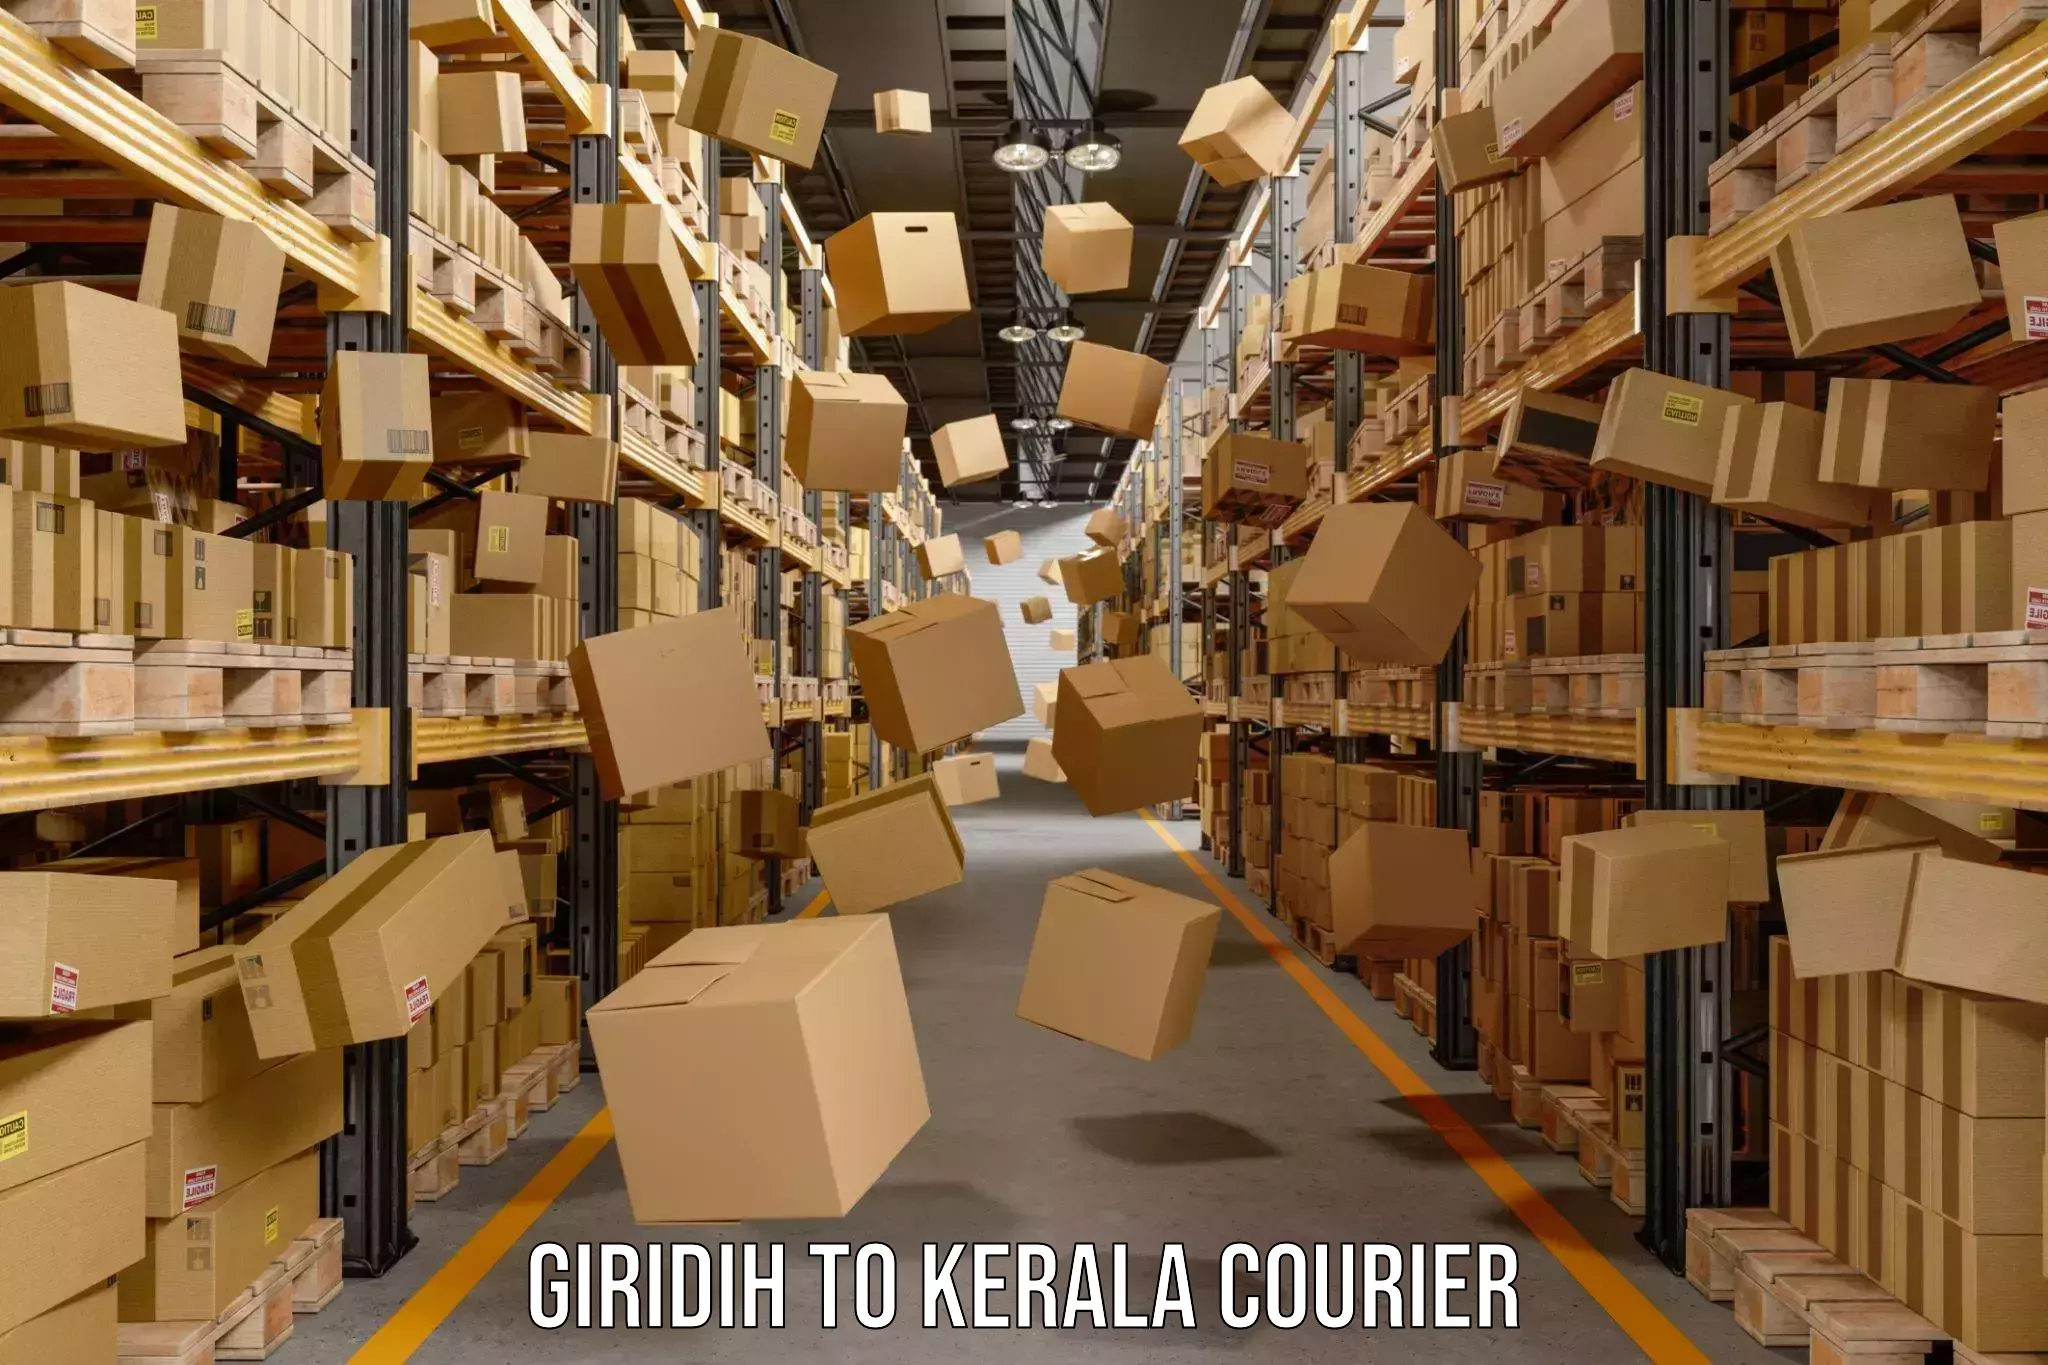 International courier rates Giridih to Kalanjoor